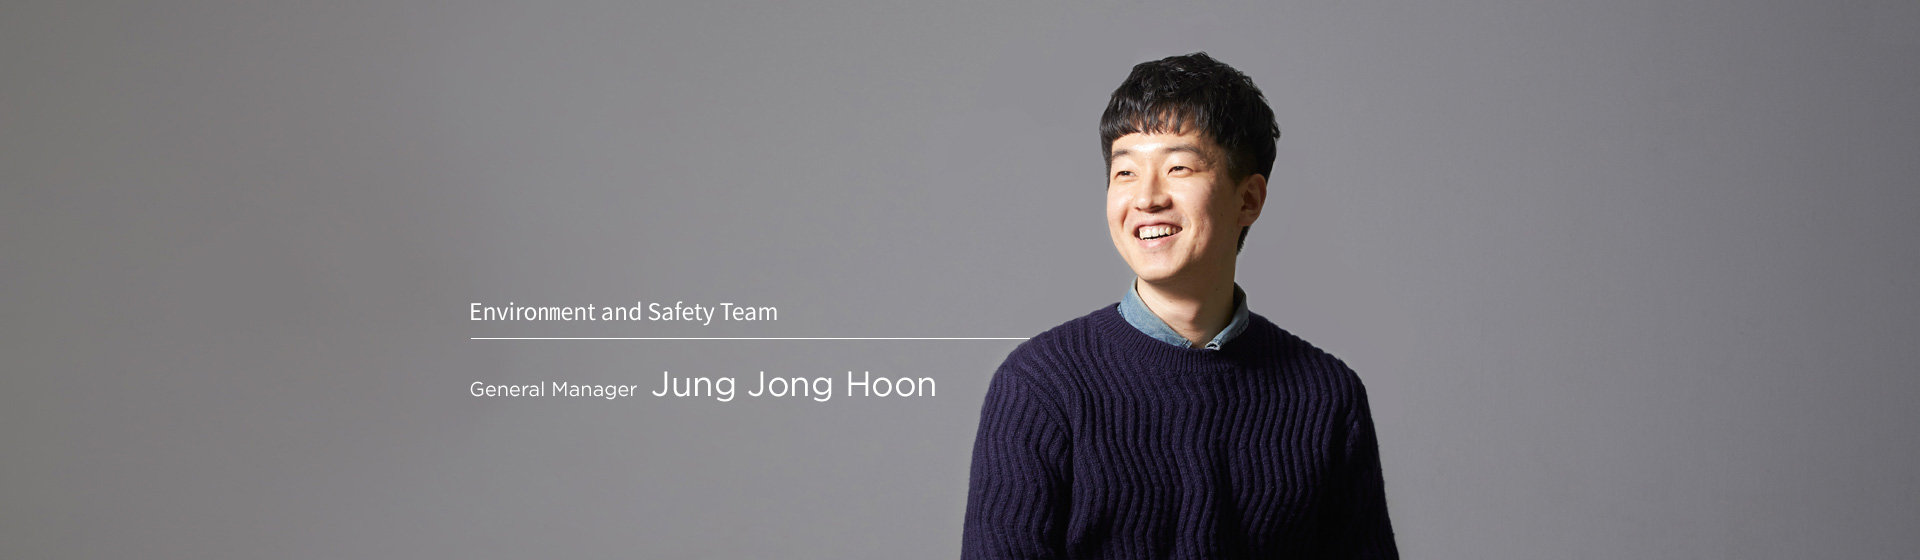 Environment and Safety - Jonghun Jeong 